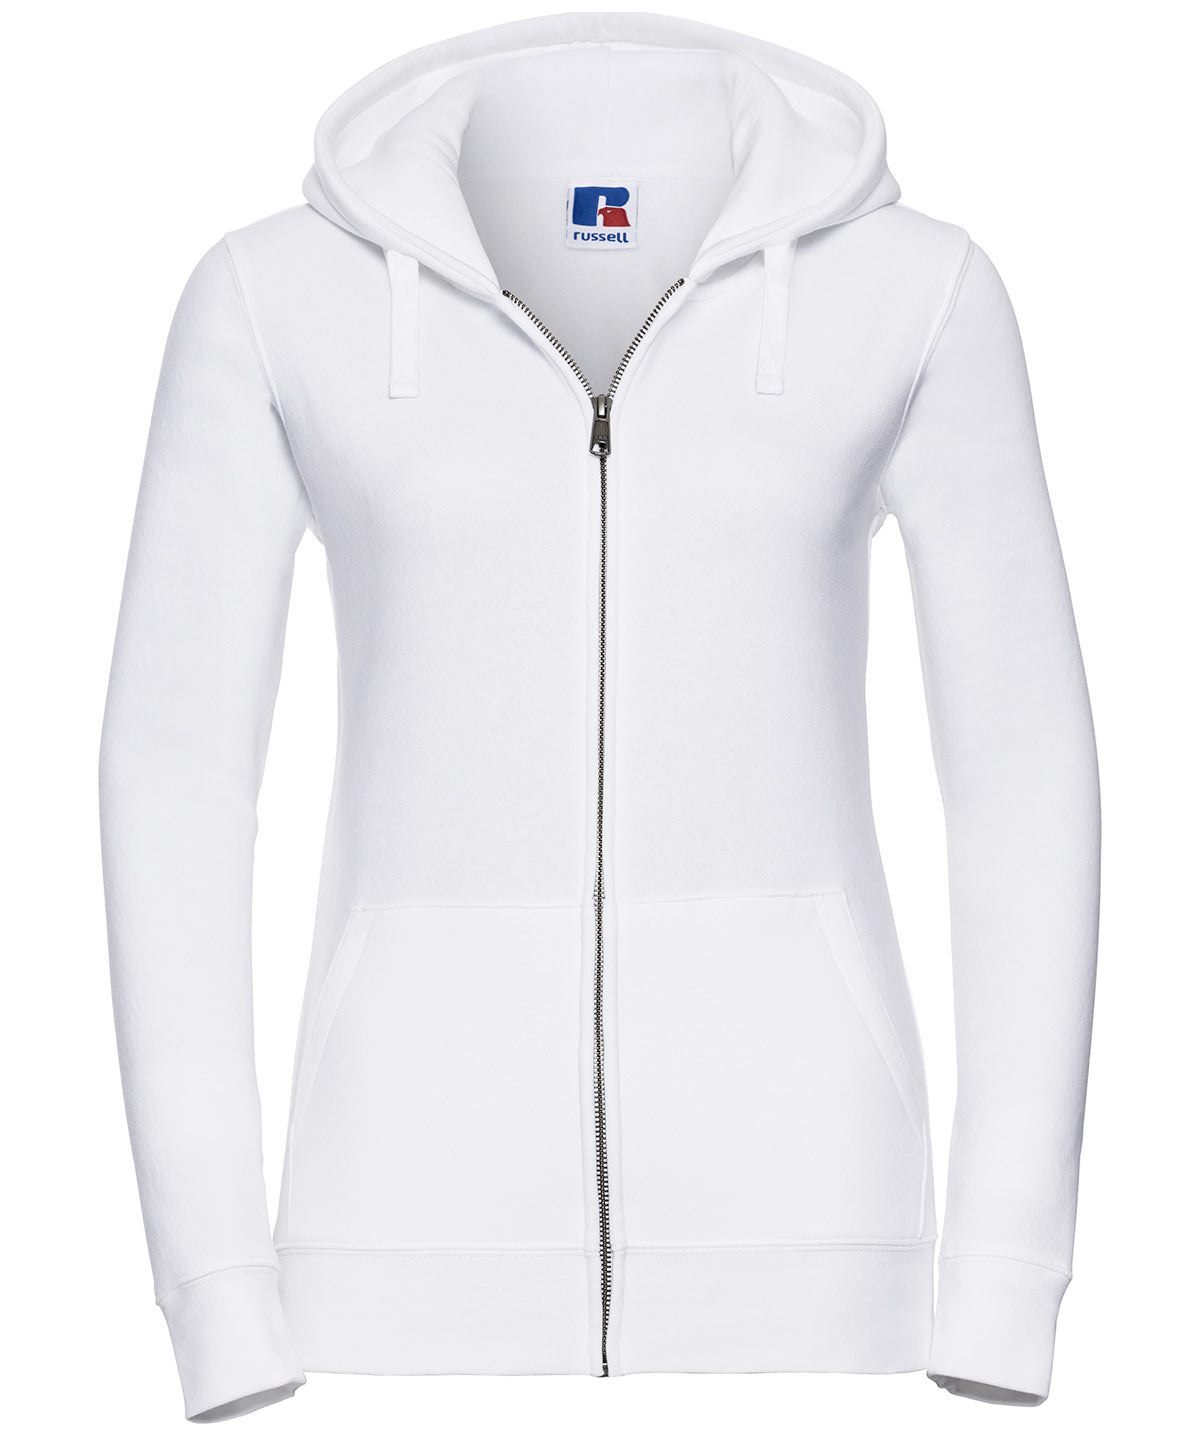 Hettupeysur - Women's Authentic Zipped Hooded Sweatshirt